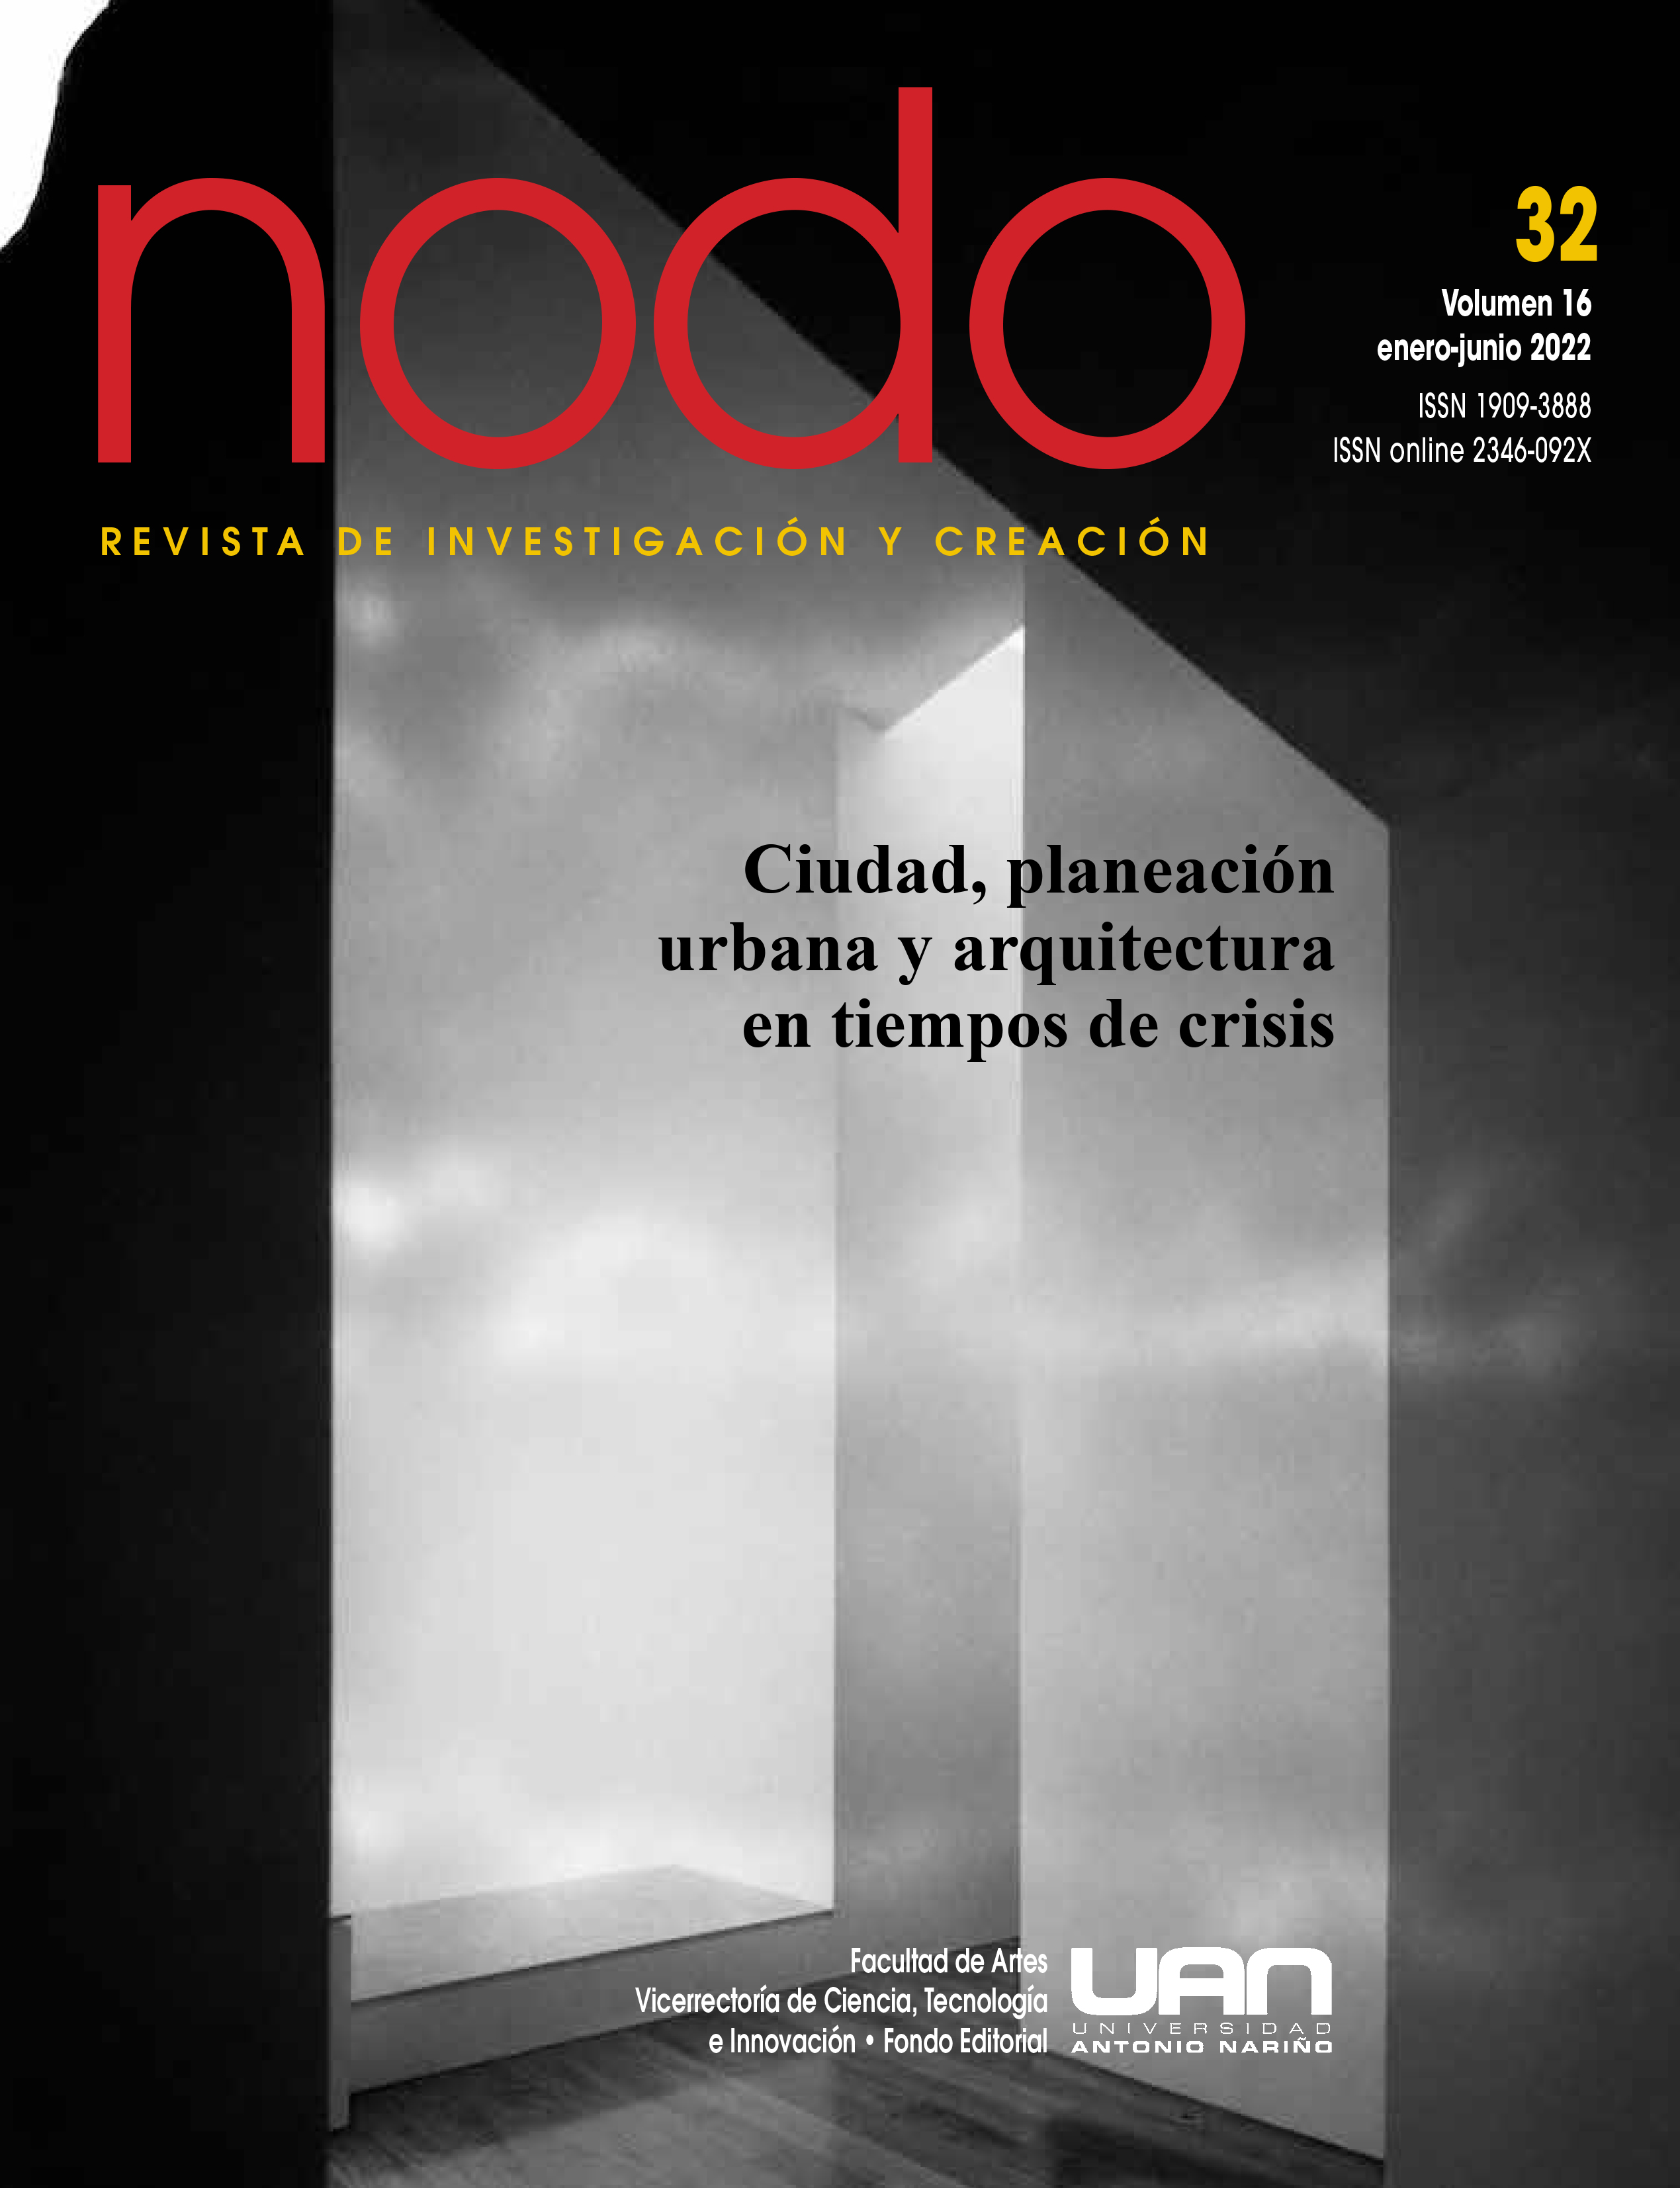 Este es el número 32 de la revista Nodo encontrará Ciudad, planeación urbana y arquitectura en tiempos de crisis